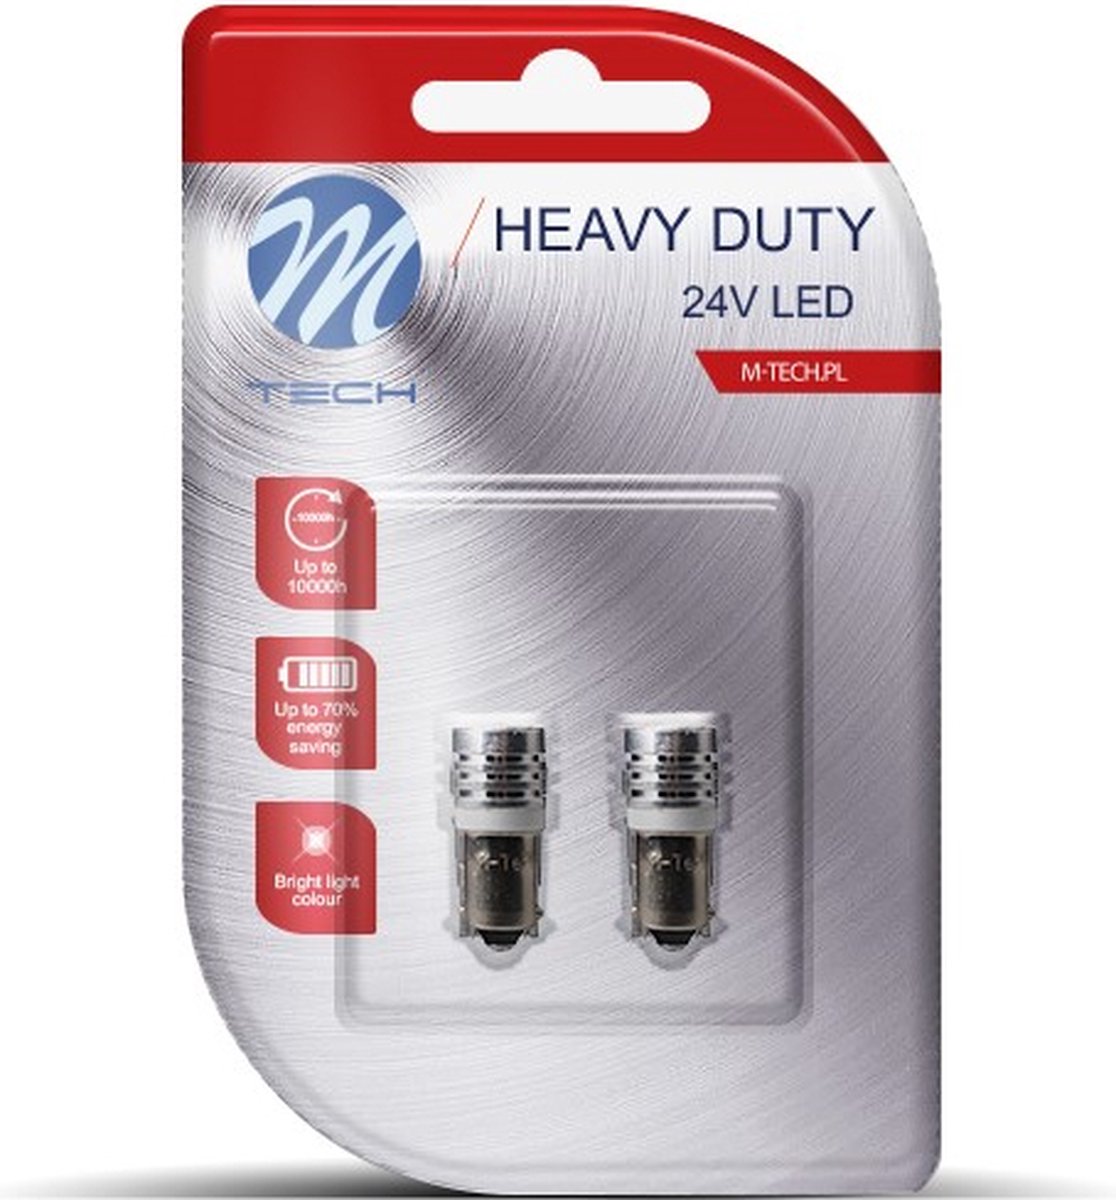 M-Tech LED - BA9s / T4W 24V HEAVY DUTY - Platinum 1x Led diode - Wit - Set